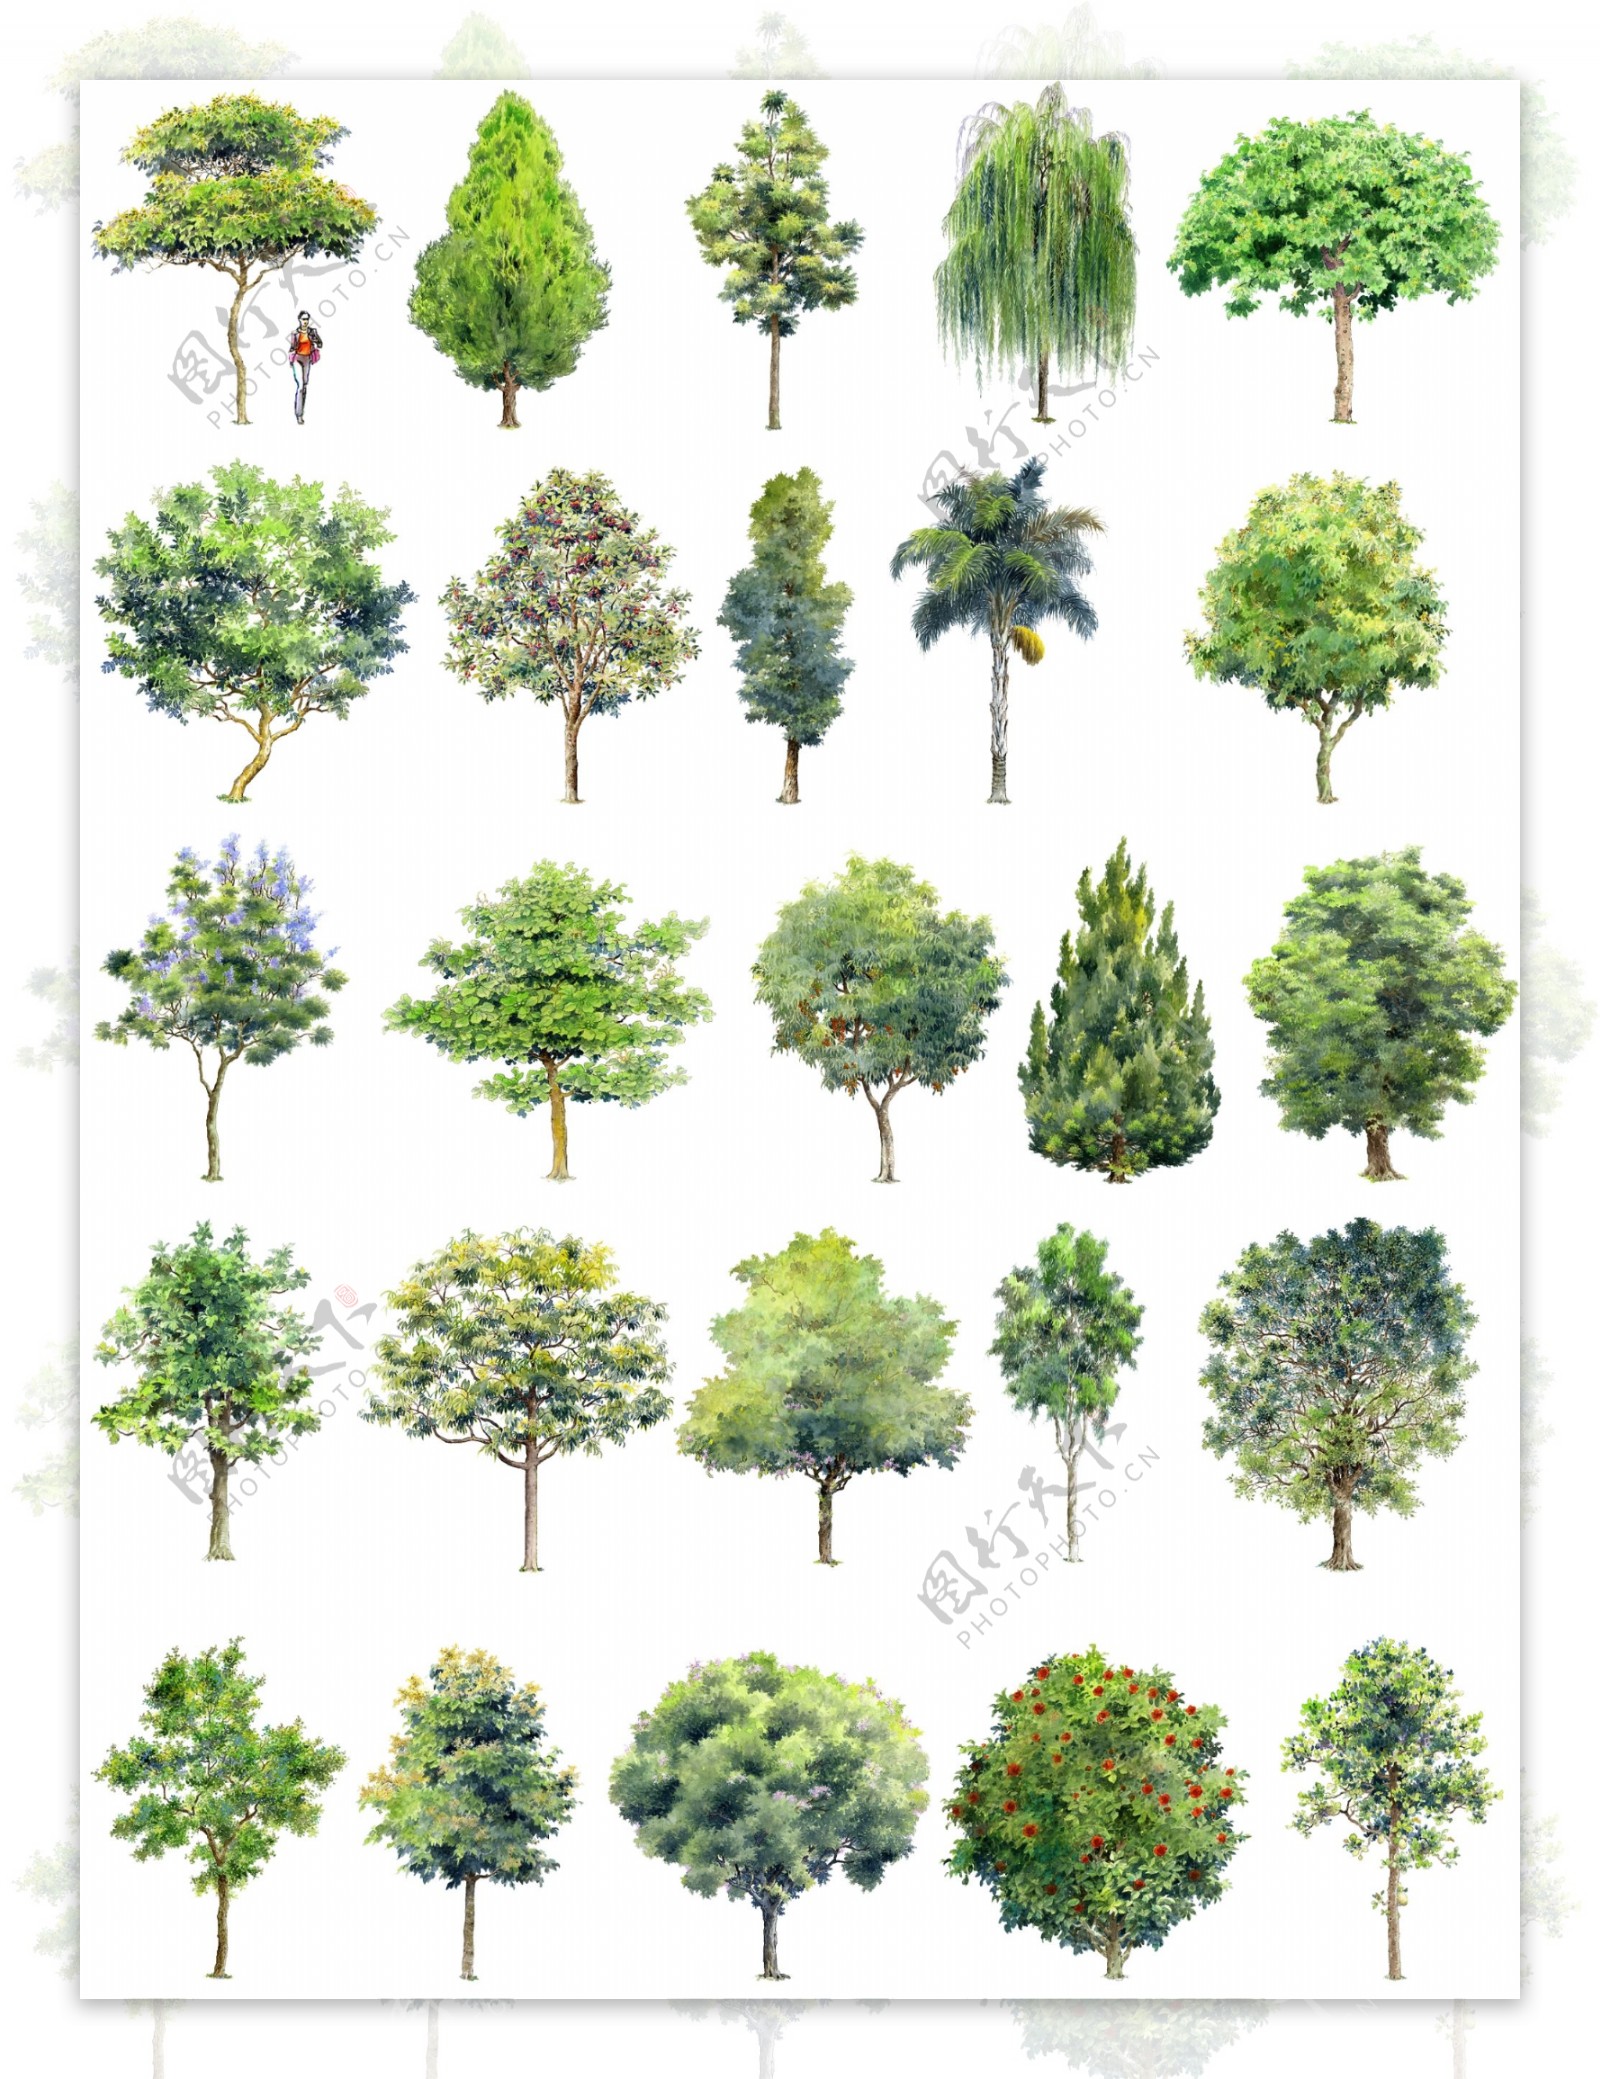 手绘园林景观树木立面效果图素材